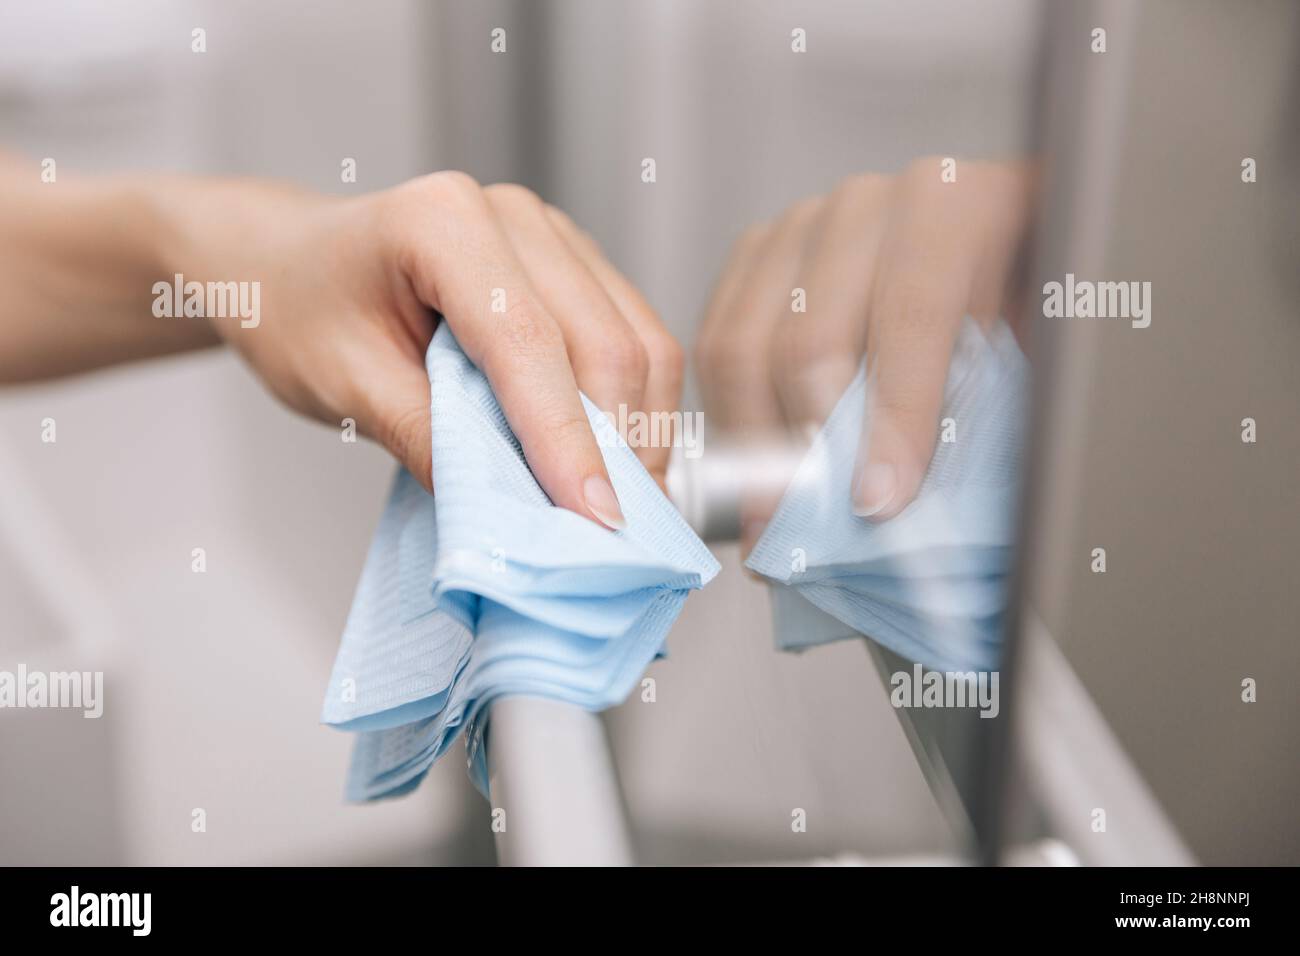 Reinigen Sie die Griffe der Glastür mit einem antiseptischen, feuchten Tuch. Frau Hand mit Handtuch für die Reinigung Zimmer Tür Link. Desinfizieren von Oberflächen in Stockfoto